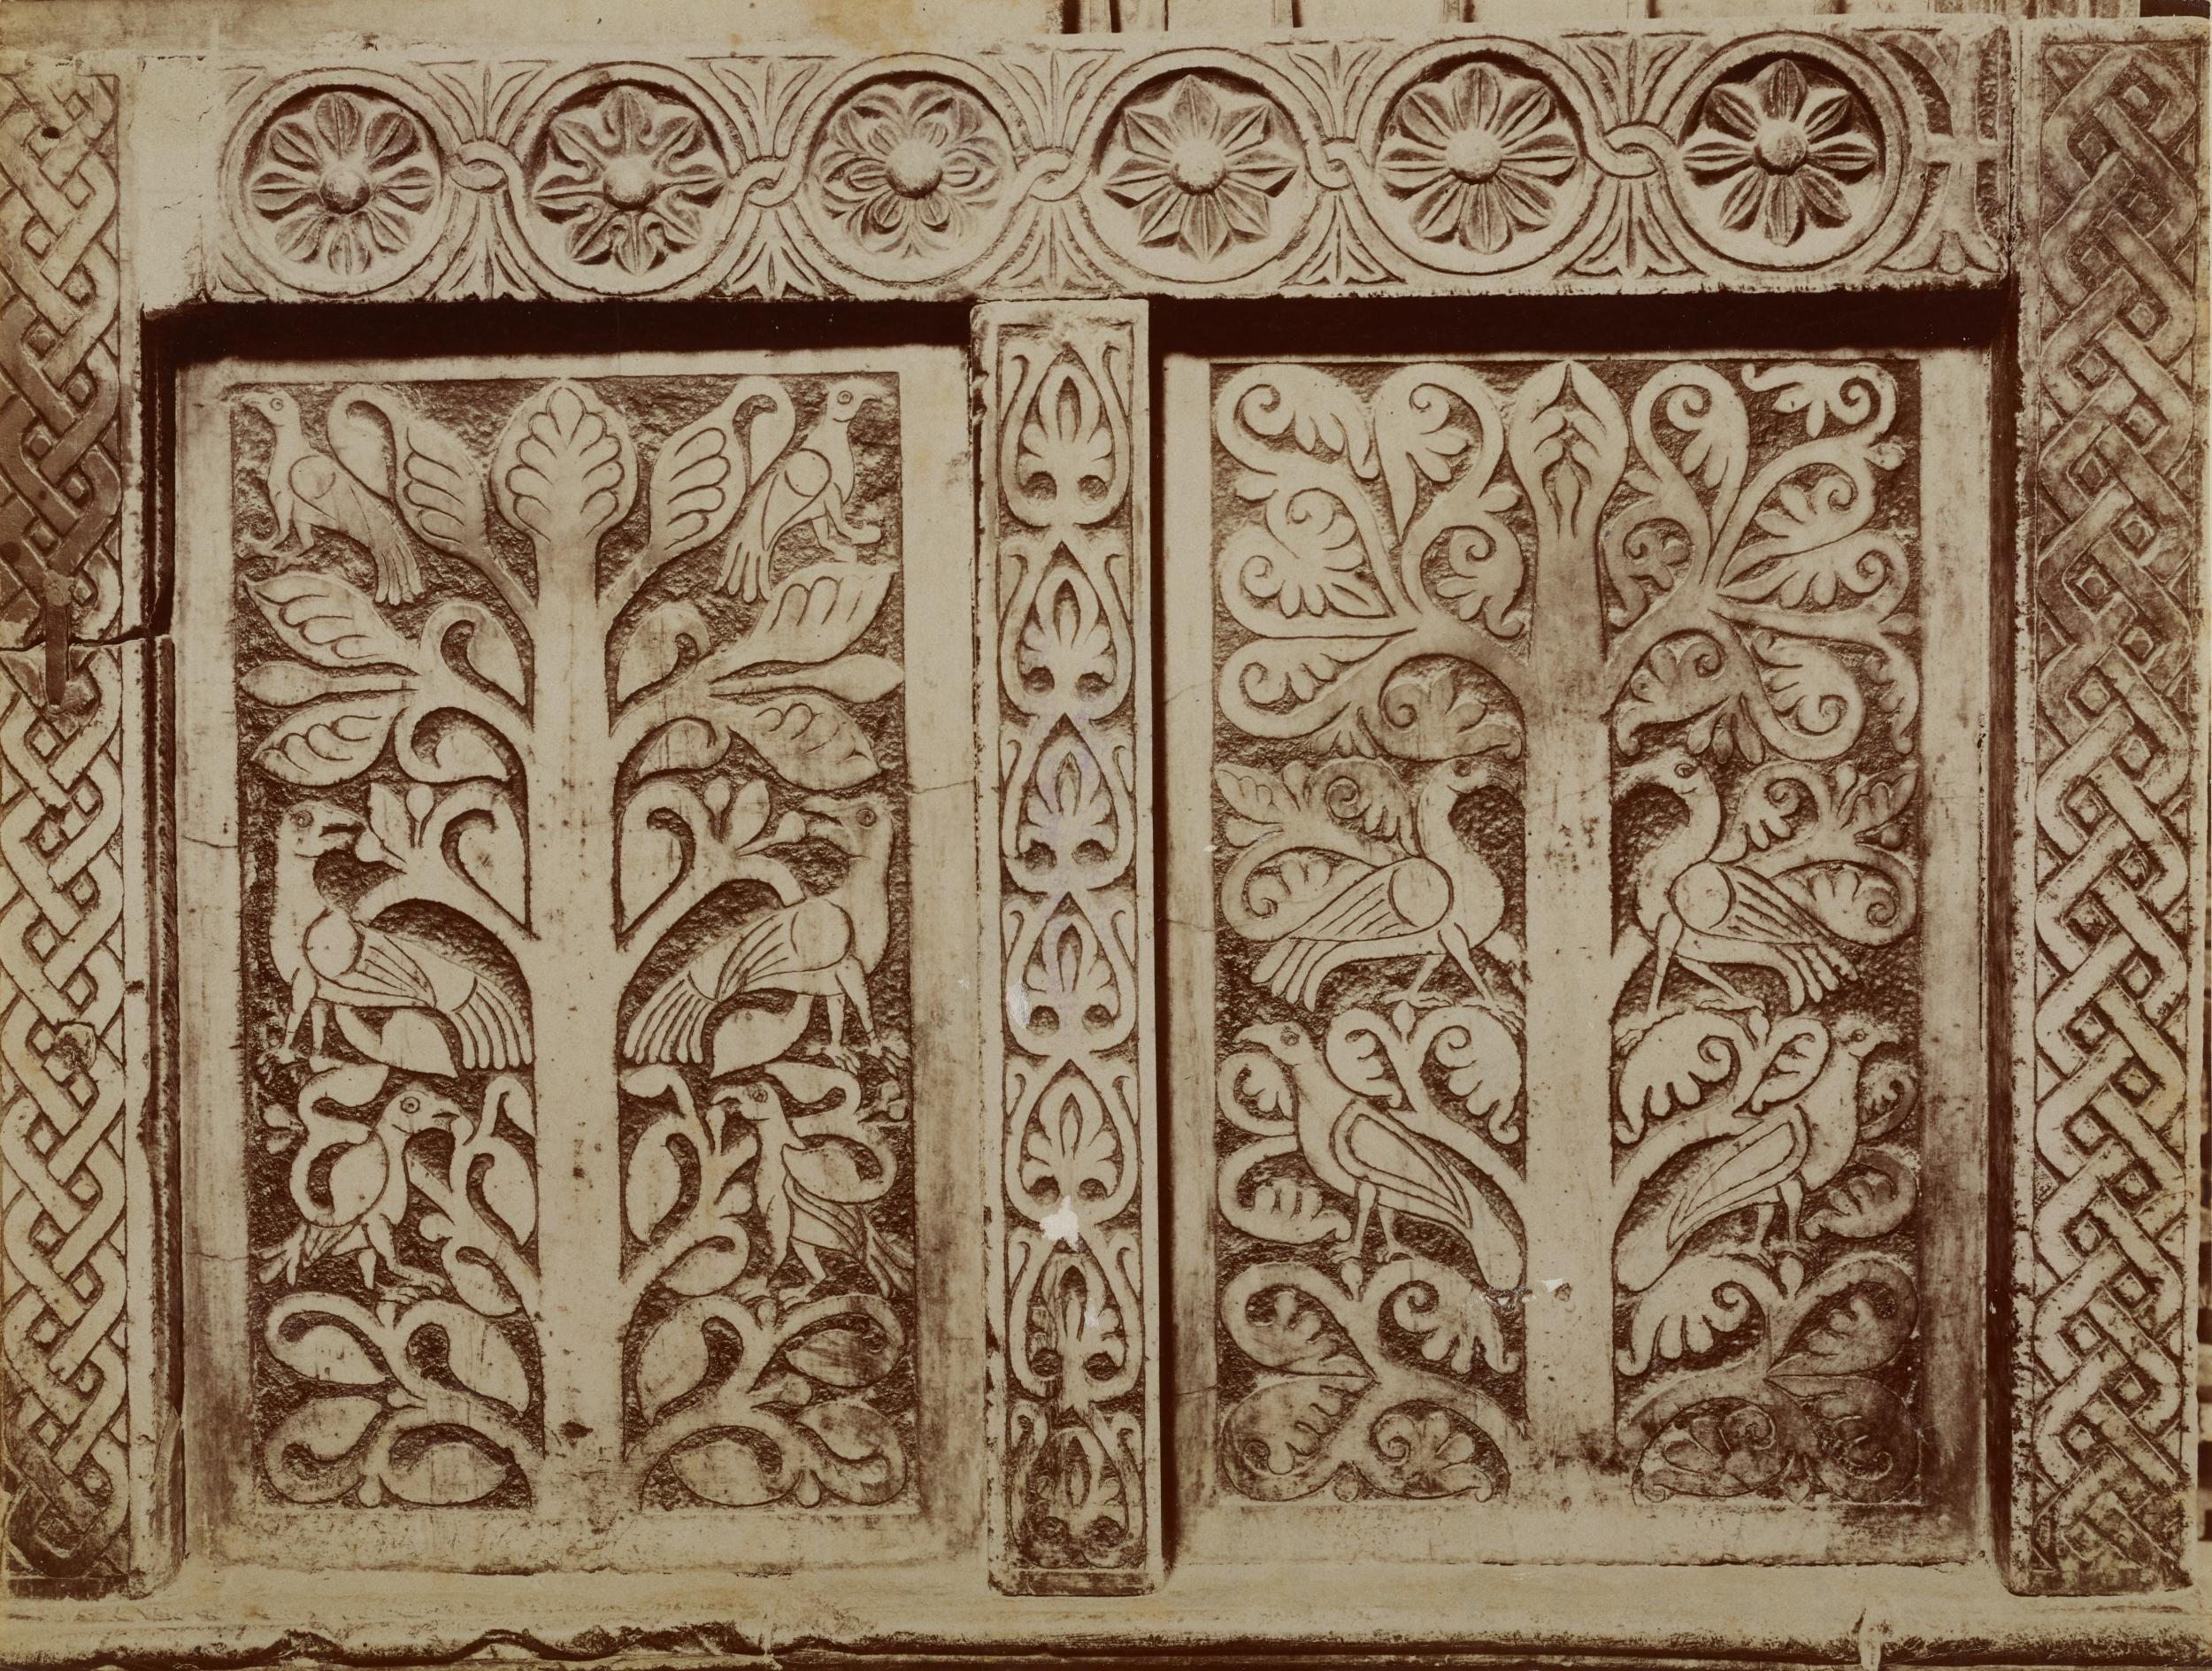 Fotografo non identificato, Bitonto - Cattedrale di S. Valentino, ambone, formelle a fogliami e intrecci, 1876-1900, albumina/carta, MPI137872